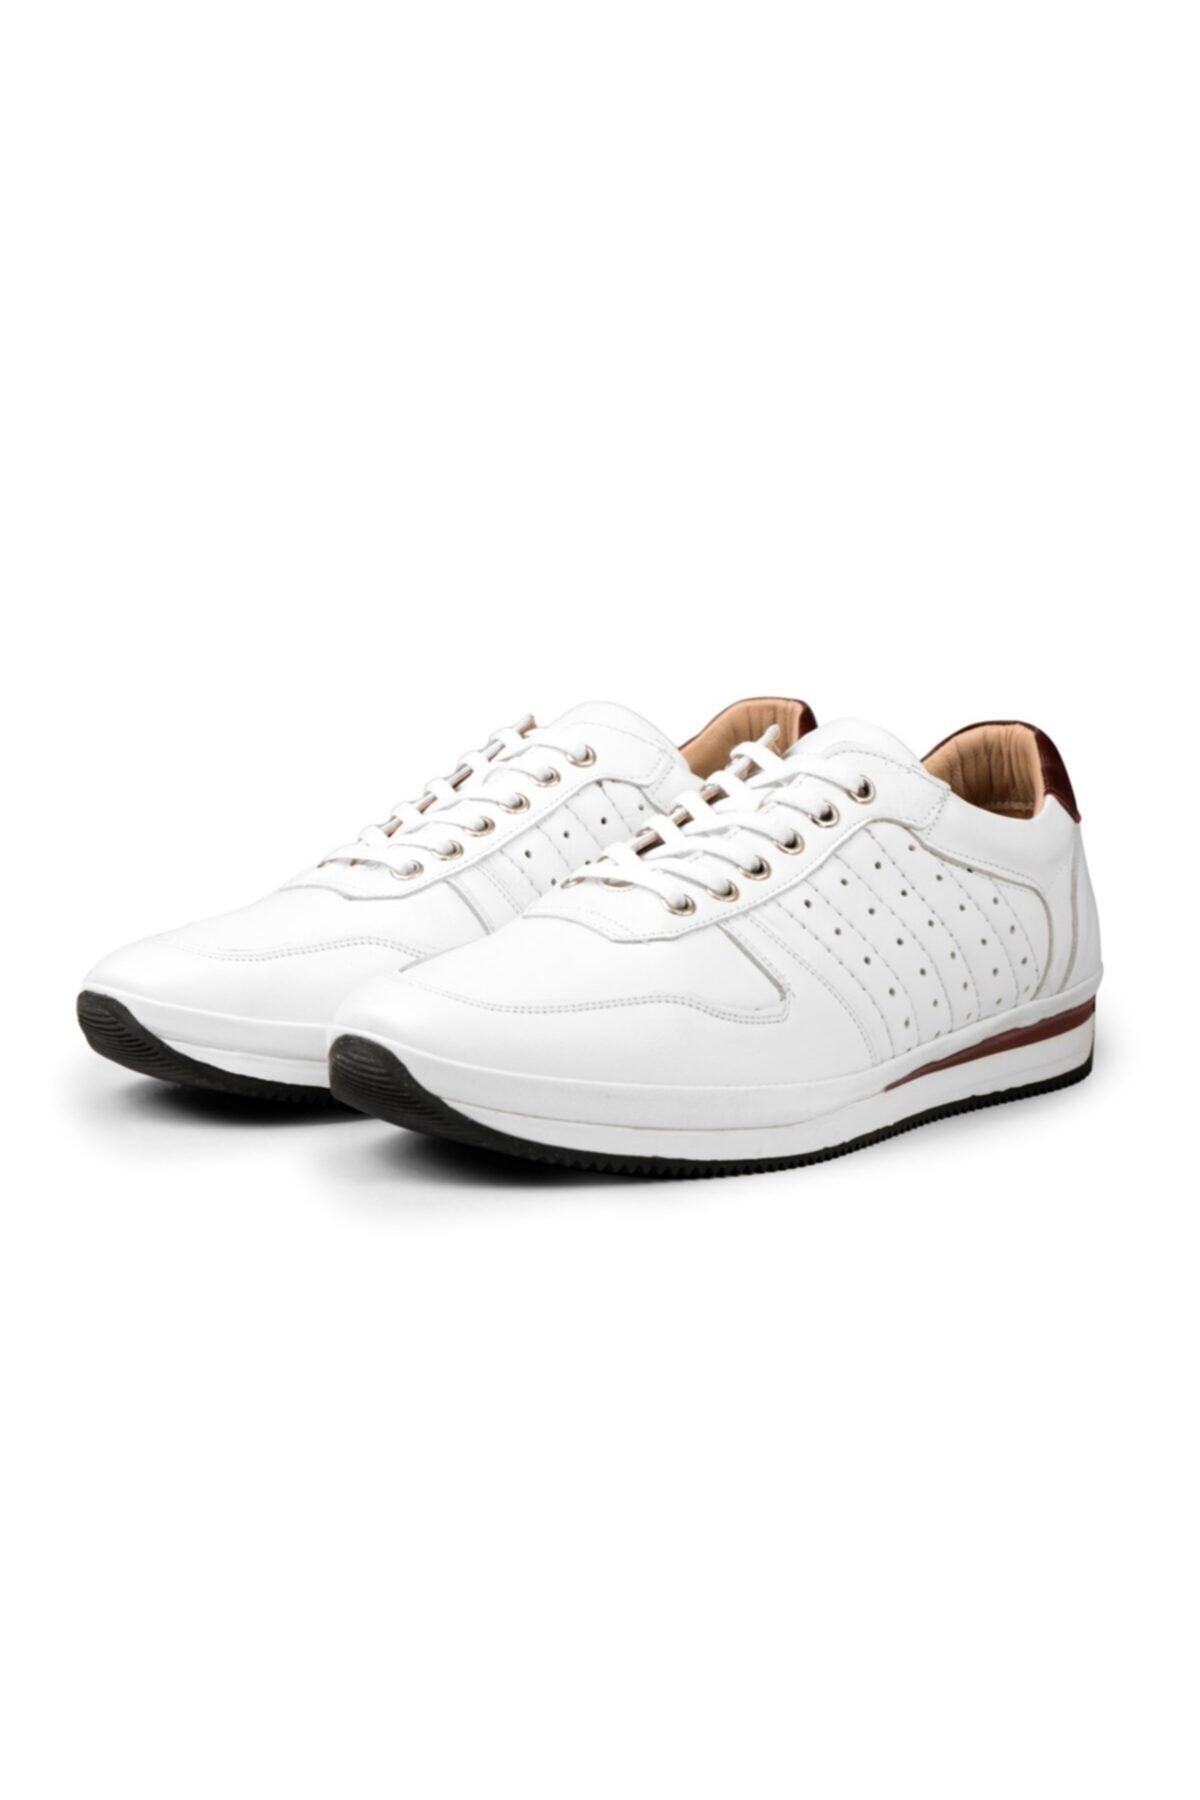 Ducavelli Cool Hakiki Deri Erkek Günlük Ayakkabı, Casual Ayakkabı, %100 Deri Ayakkabı 4 Mevsim Ayakkabı Beyaz